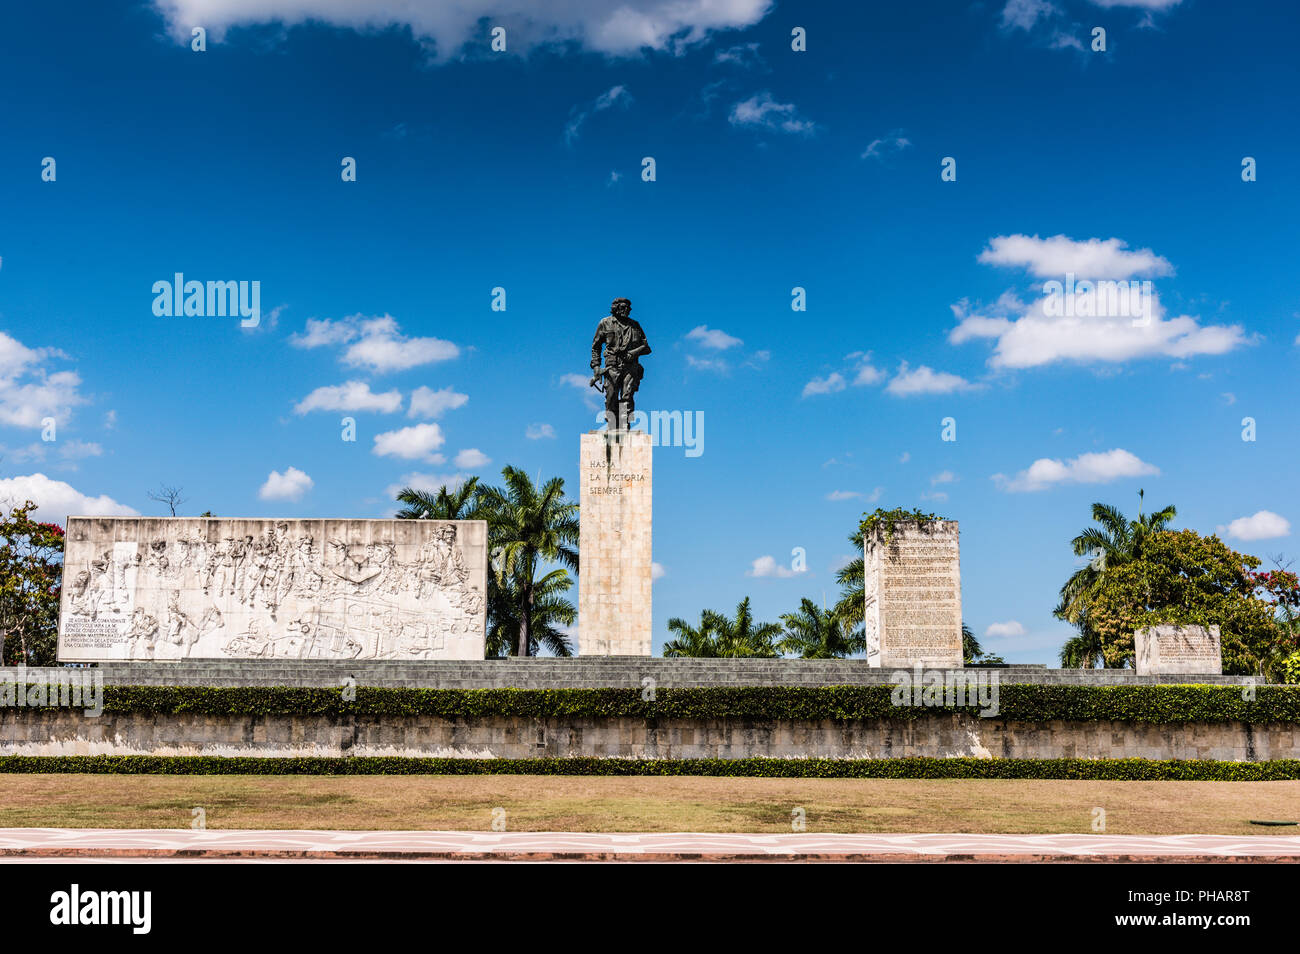 Santa Clara, Cuba / Marzo 16, 2016: la estatua de bronce del jefe militar revolucionario Che Guevara. Foto de stock